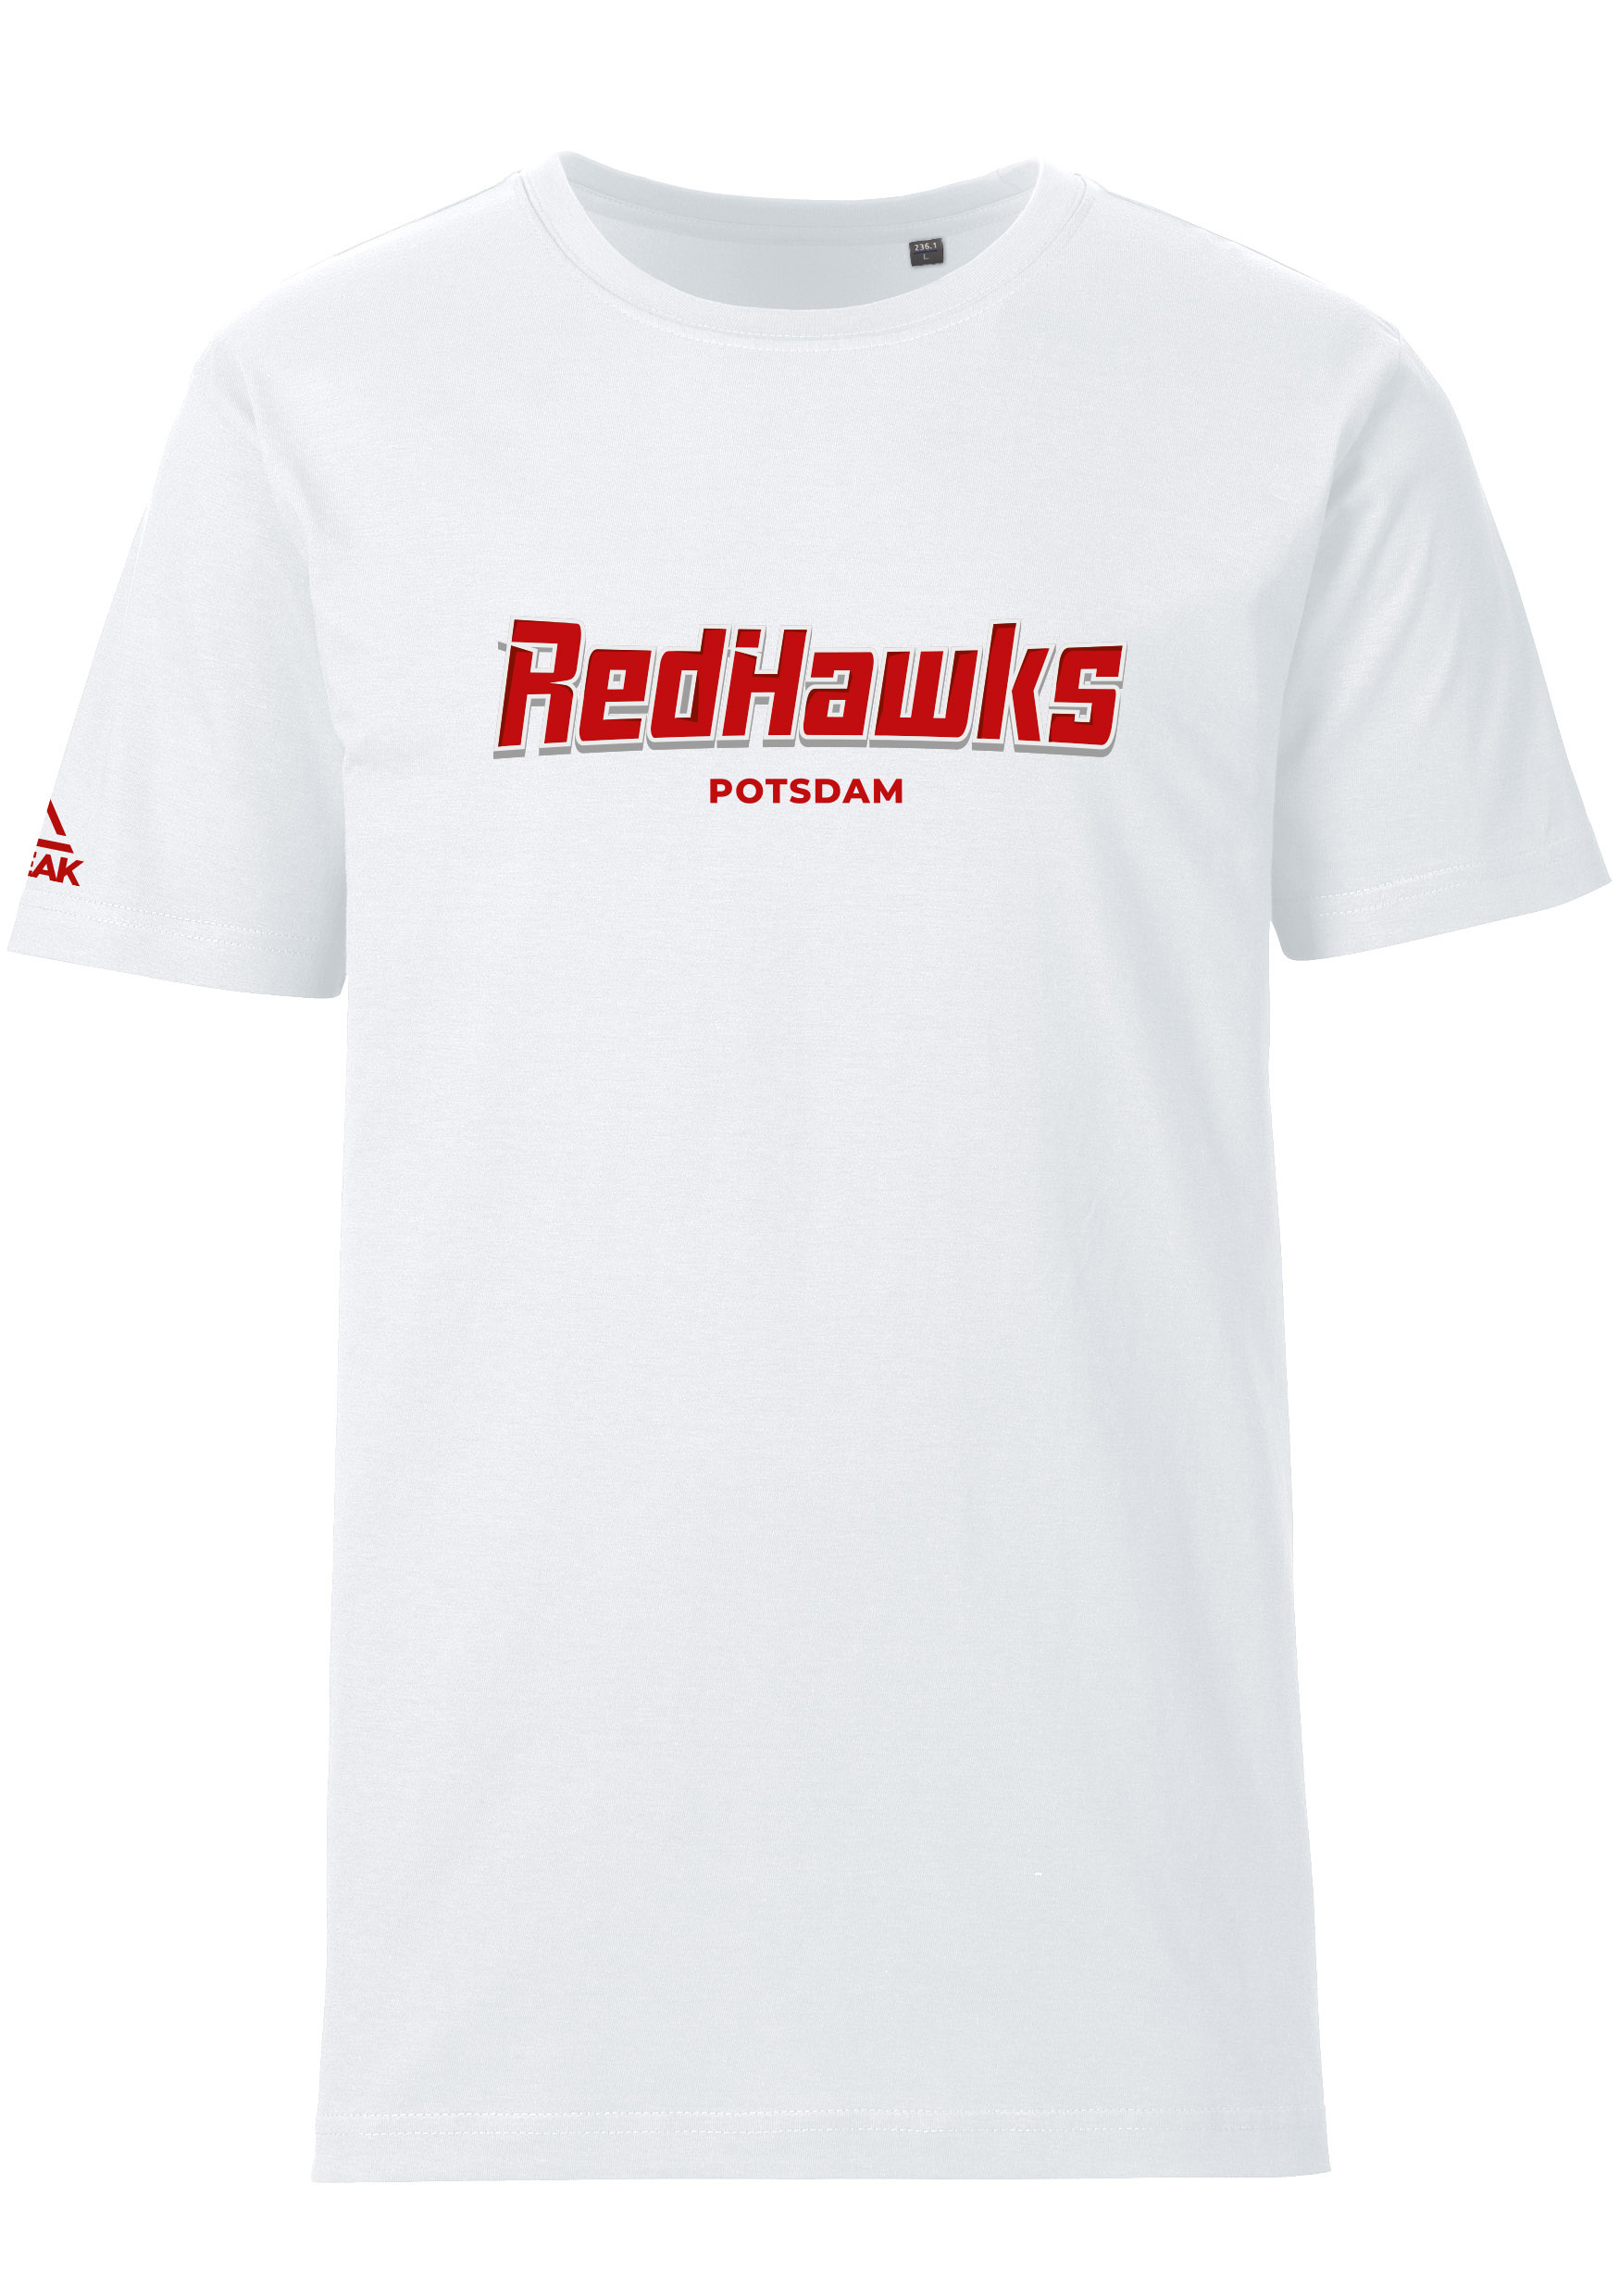 RedHawks Potsdam T-Shirt Schriftzug